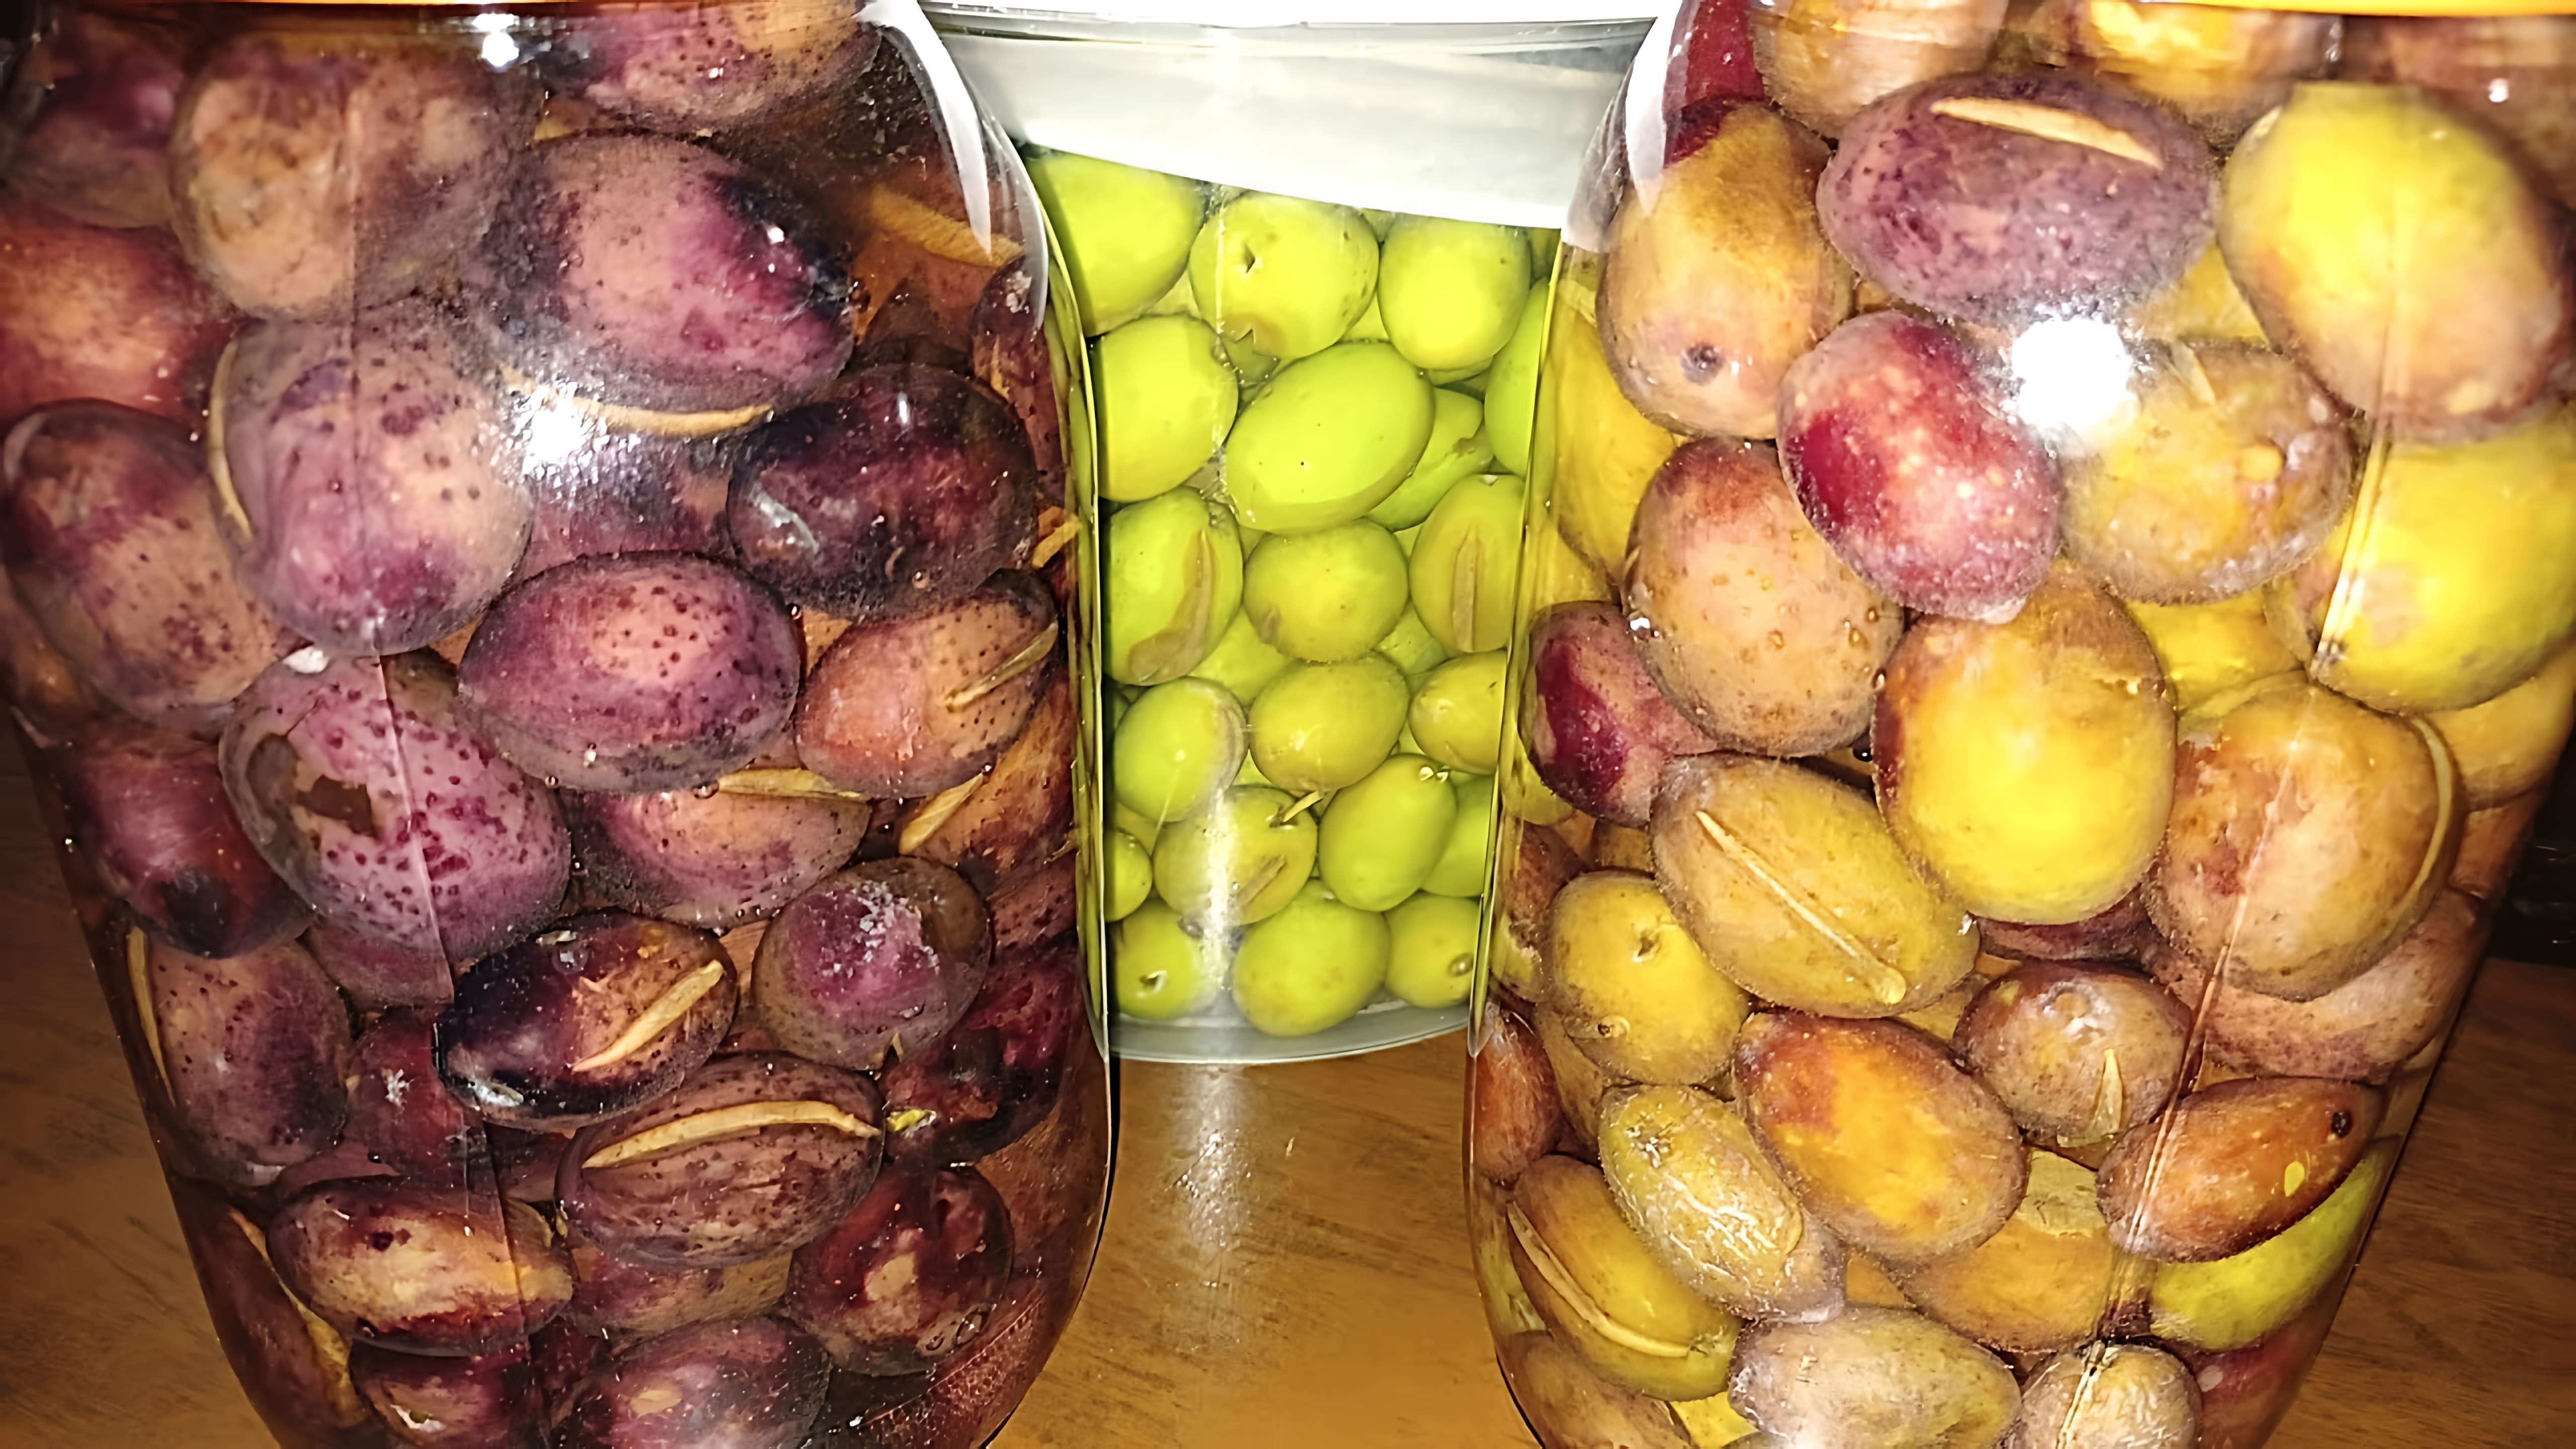 В этом видео демонстрируется процесс засолки маслин или оливок в домашних условиях